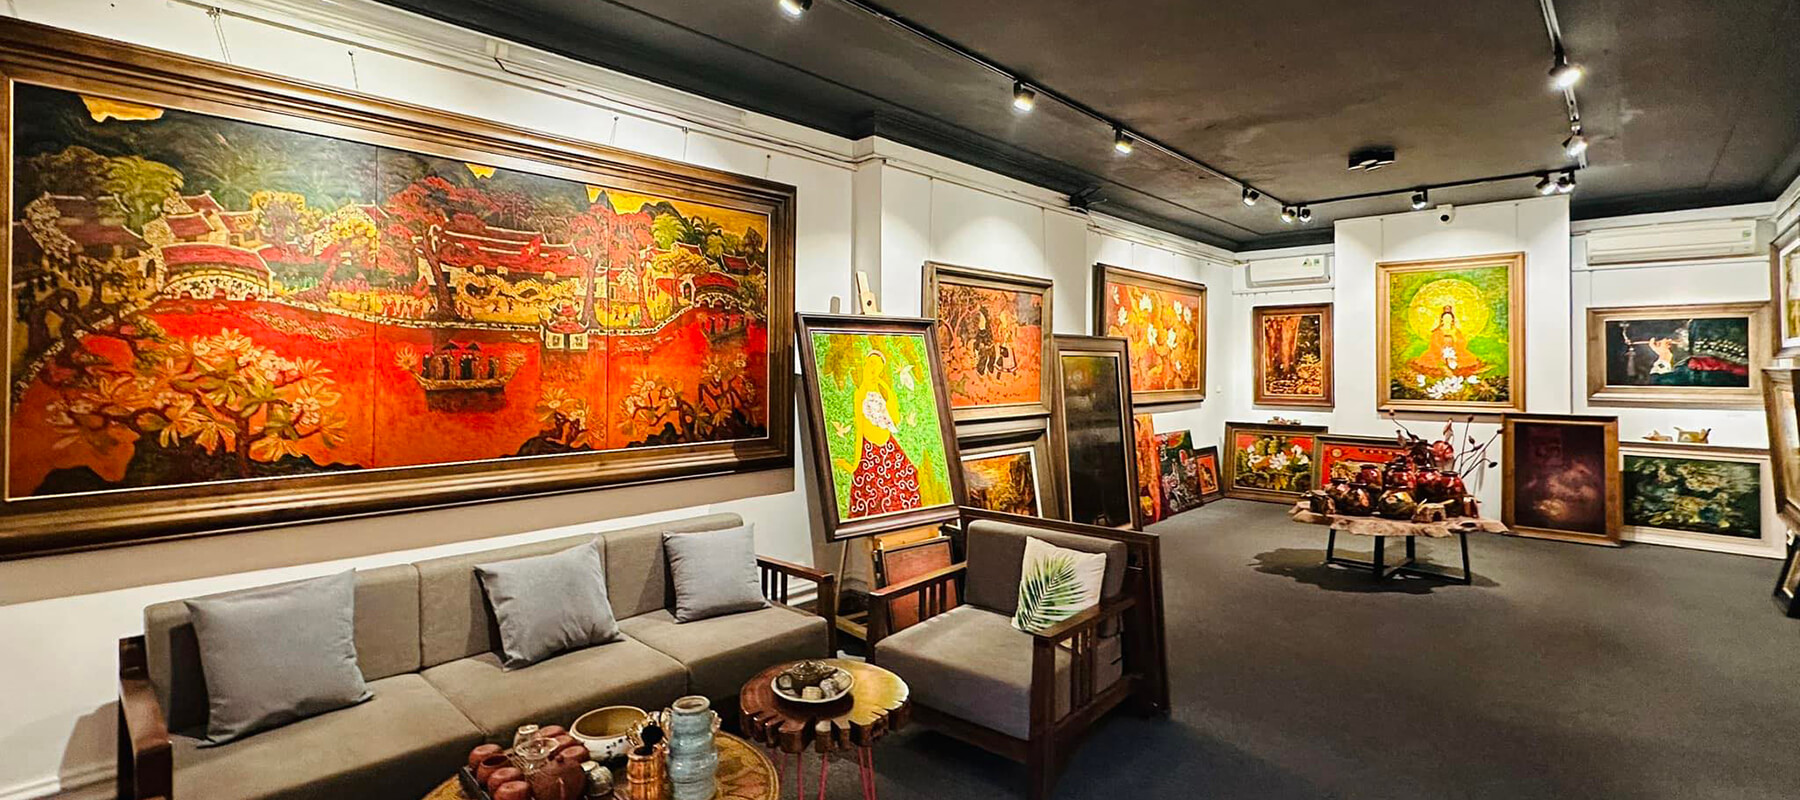 Online Art Gallery in Vietnam